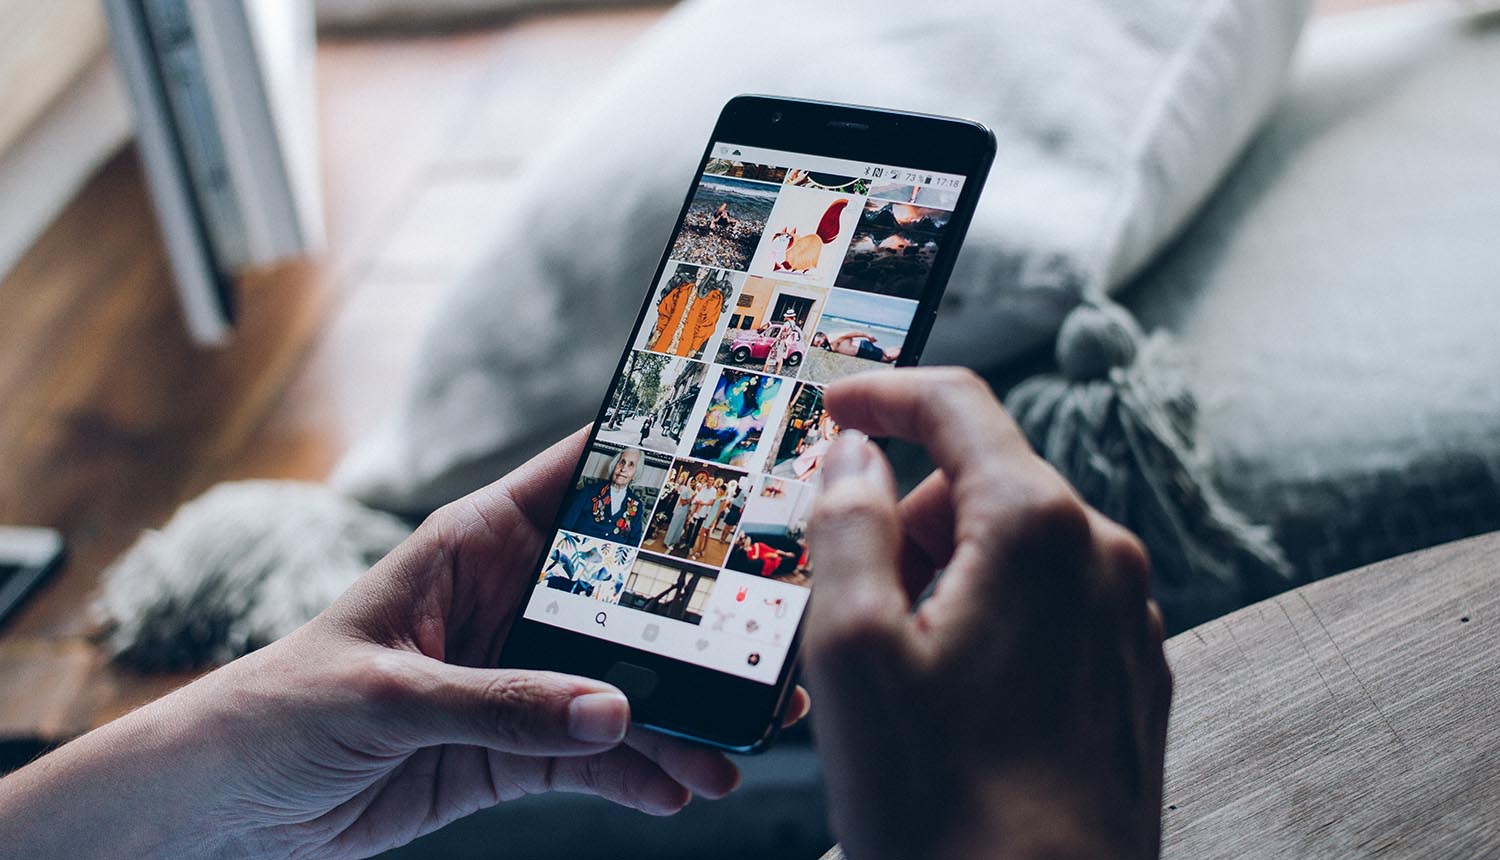 Hindari Bully, Instagram Bikin Inovasi Bagi Pengguna Remaja